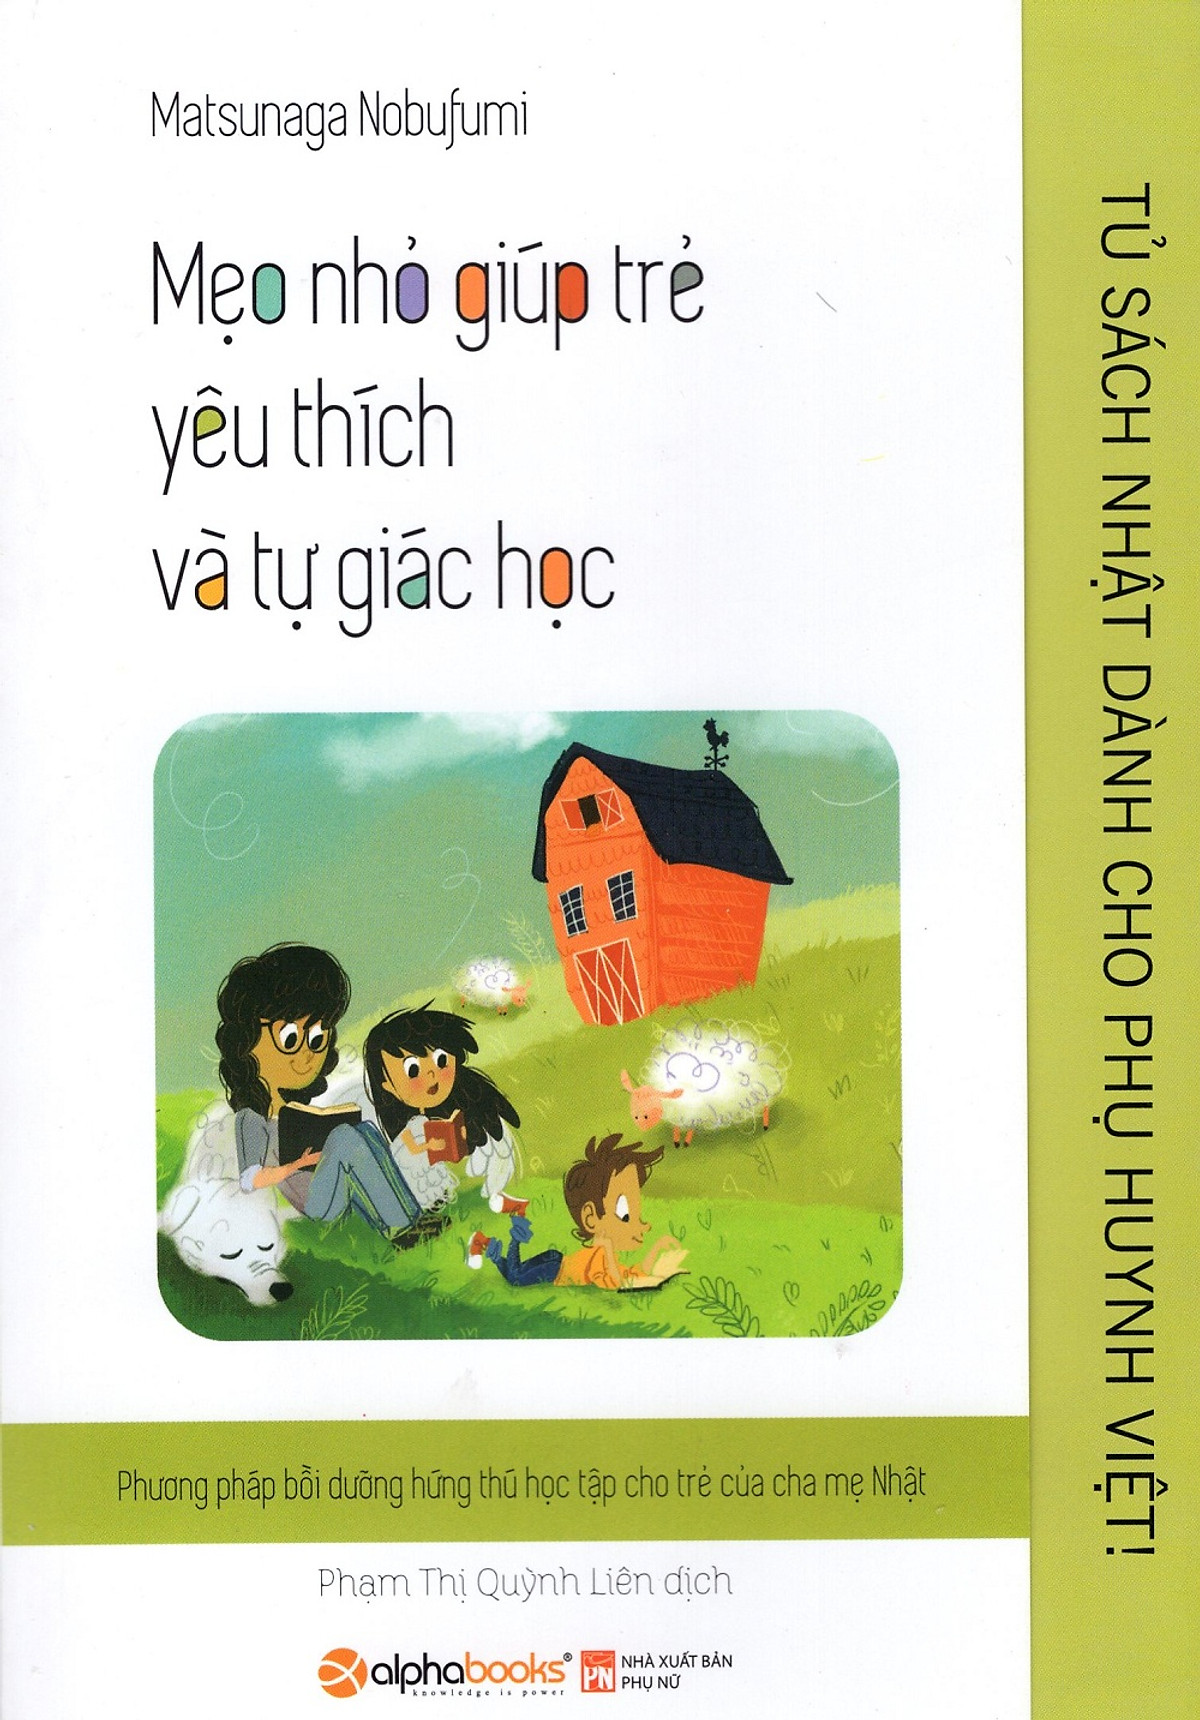 Tủ Sách Nhật Dành Cho Phụ Huynh Việt - Mẹo Nhỏ Giúp Trẻ Yêu Thích Và Tự Giác Học